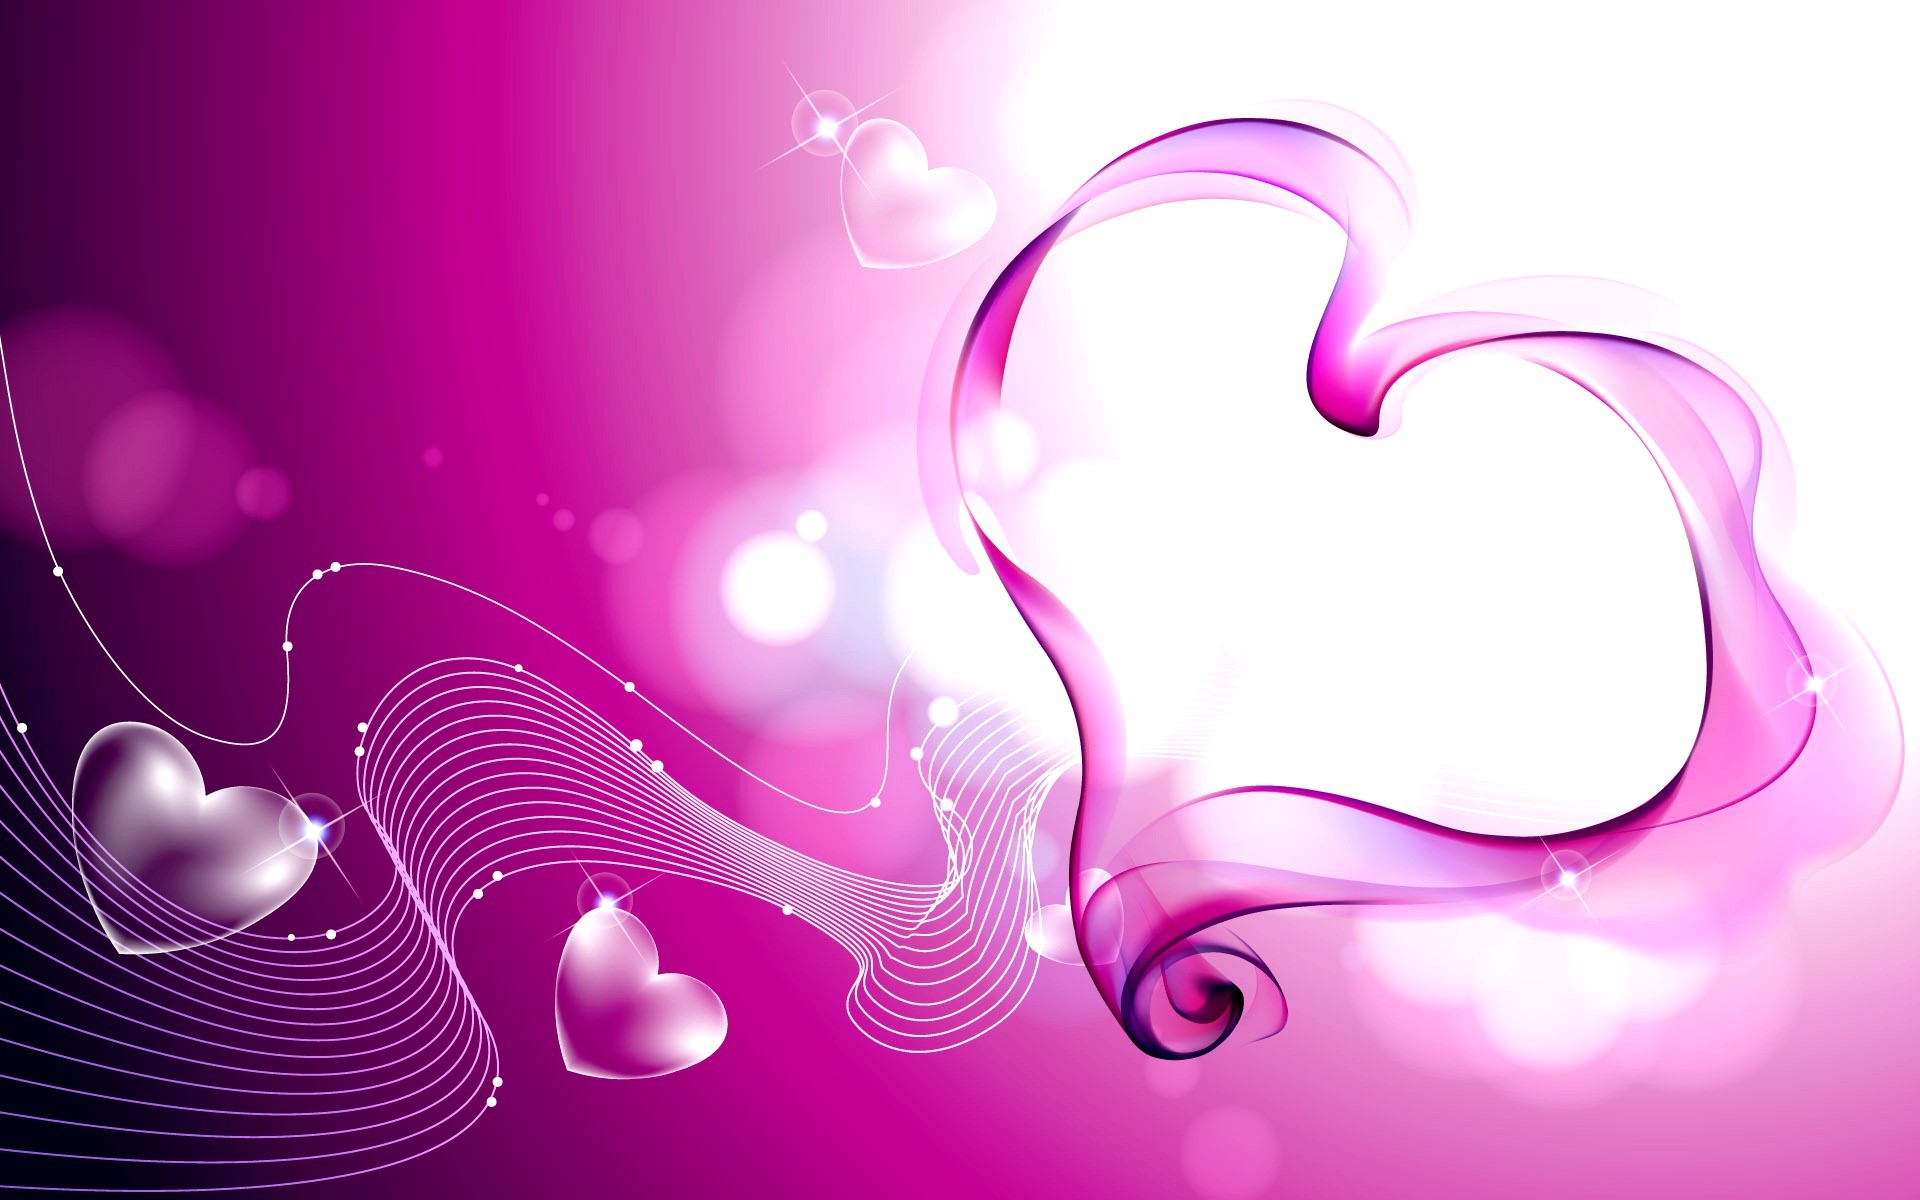 2月14日のバレンタインデーの壁紙,ピンク,紫の,心臓,バイオレット,グラフィックデザイン